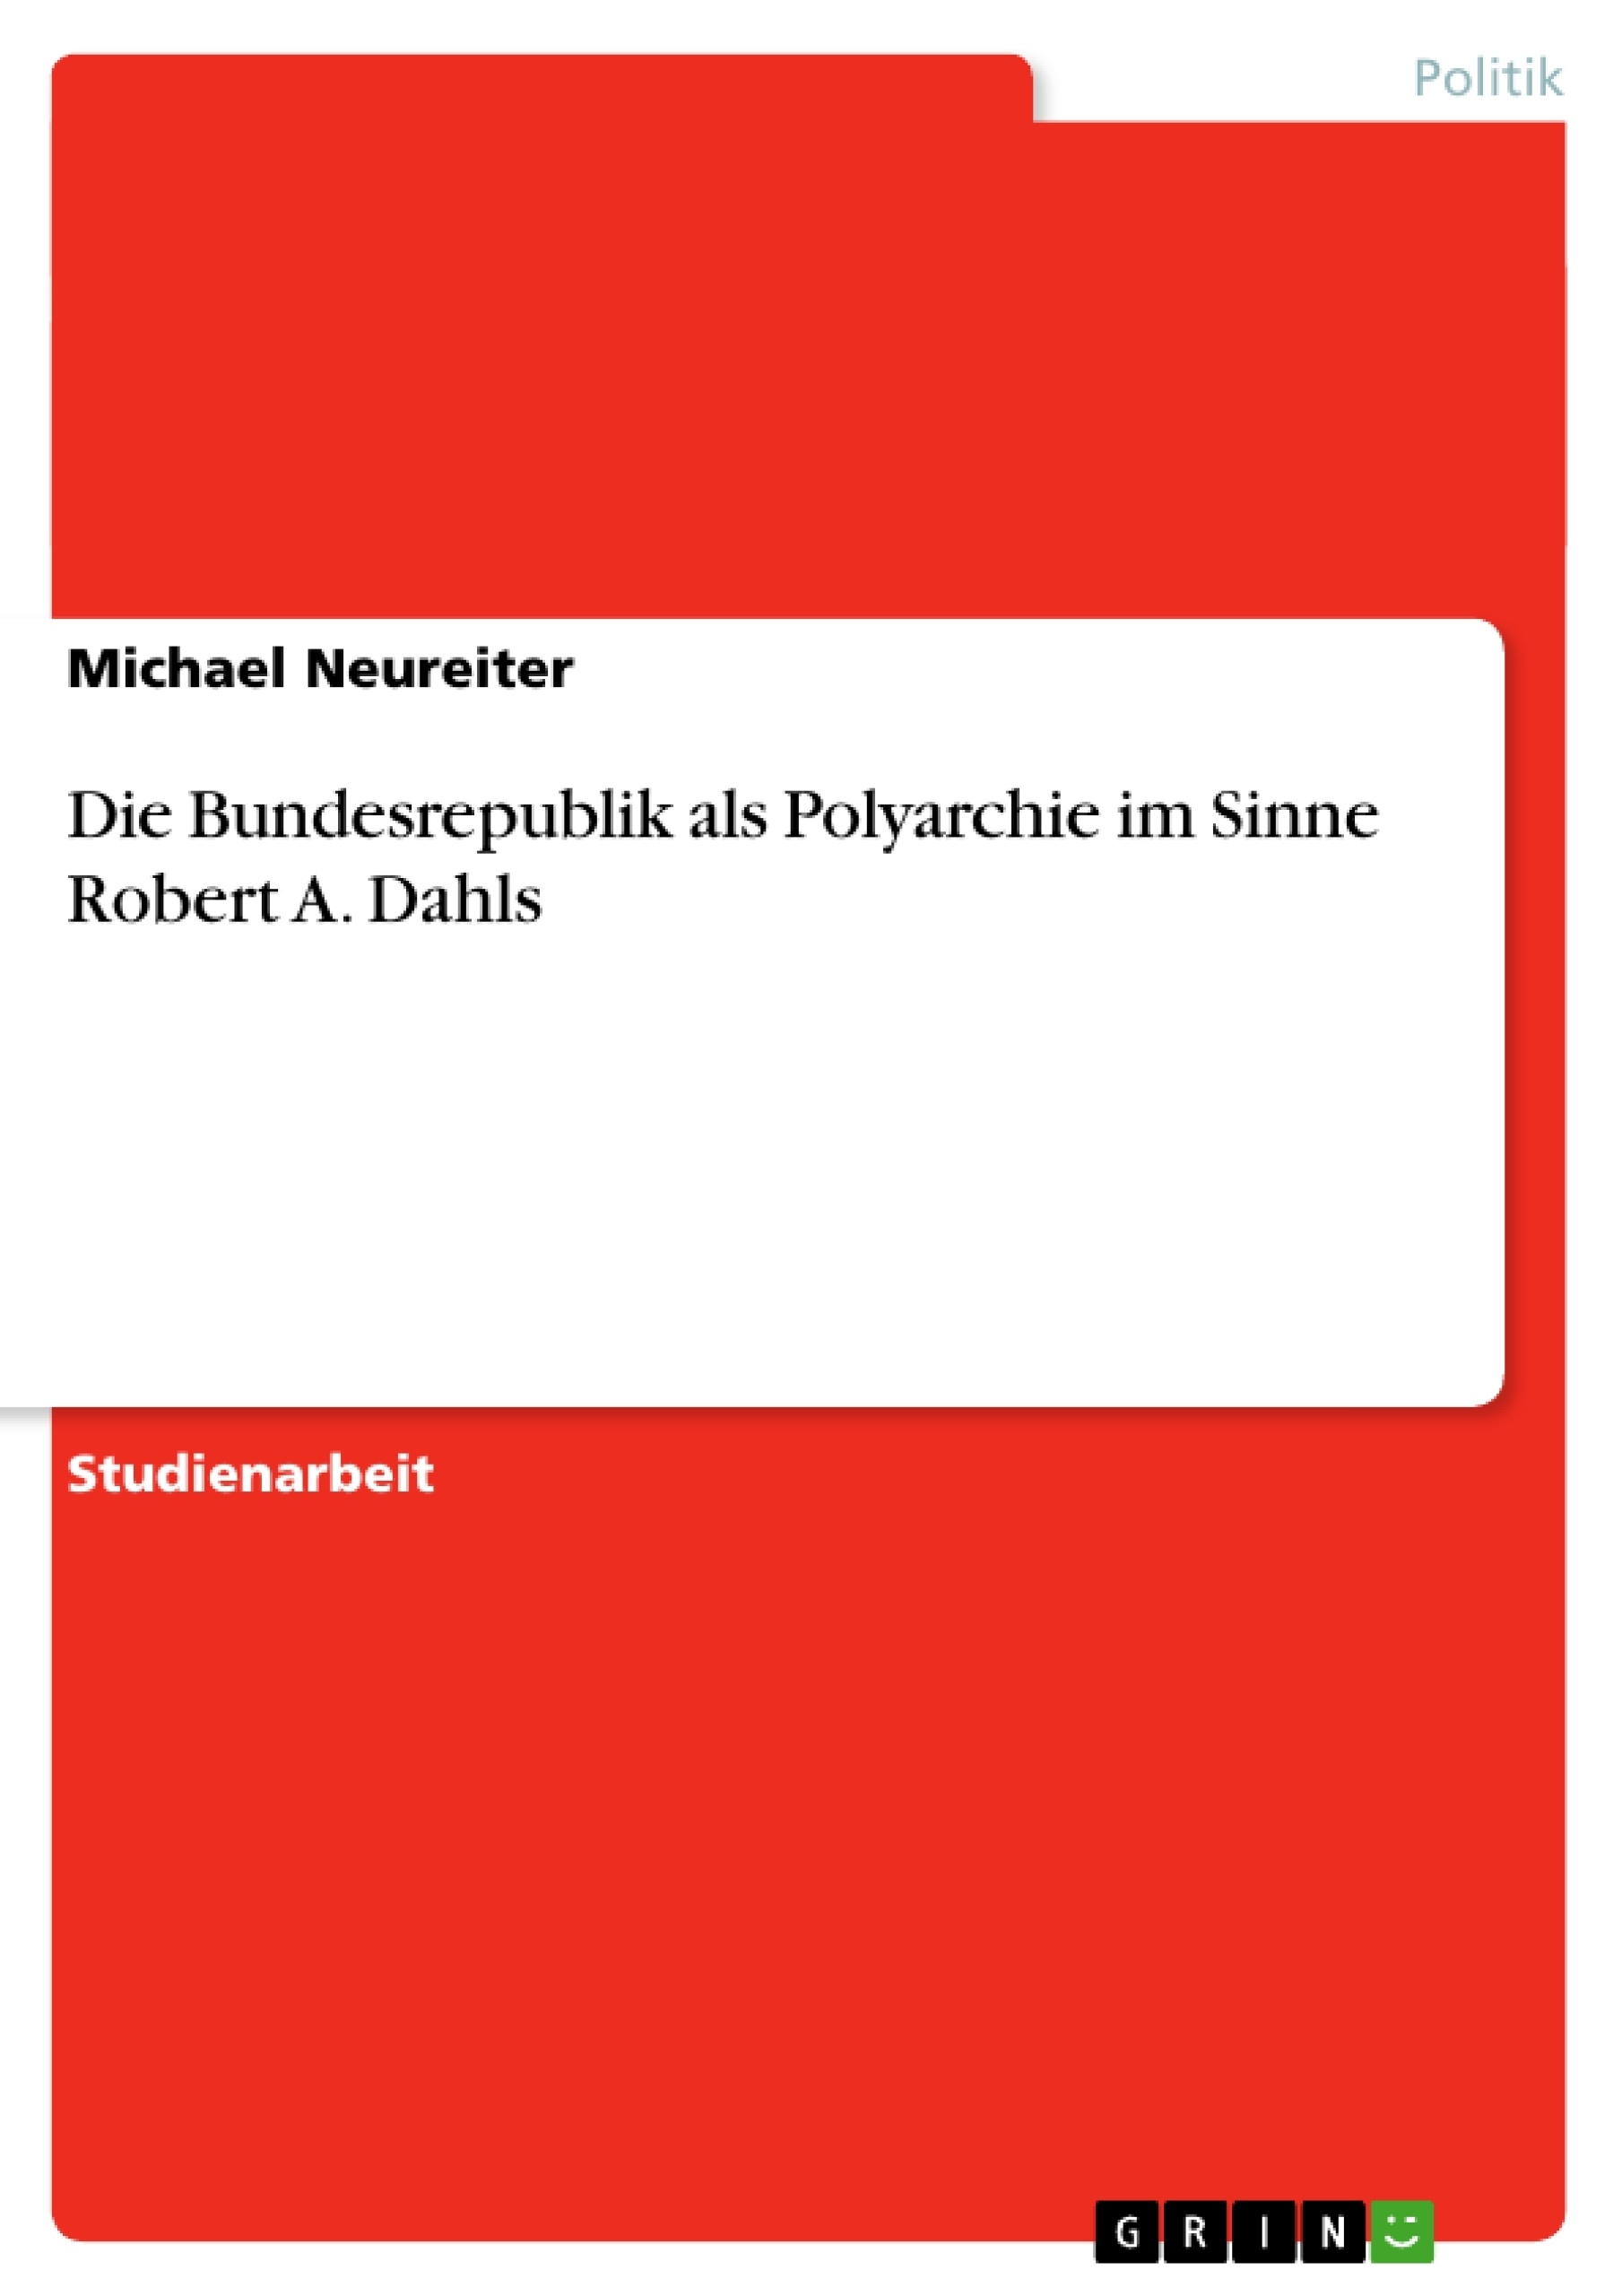 Título: Die Bundesrepublik als Polyarchie im Sinne Robert A. Dahls